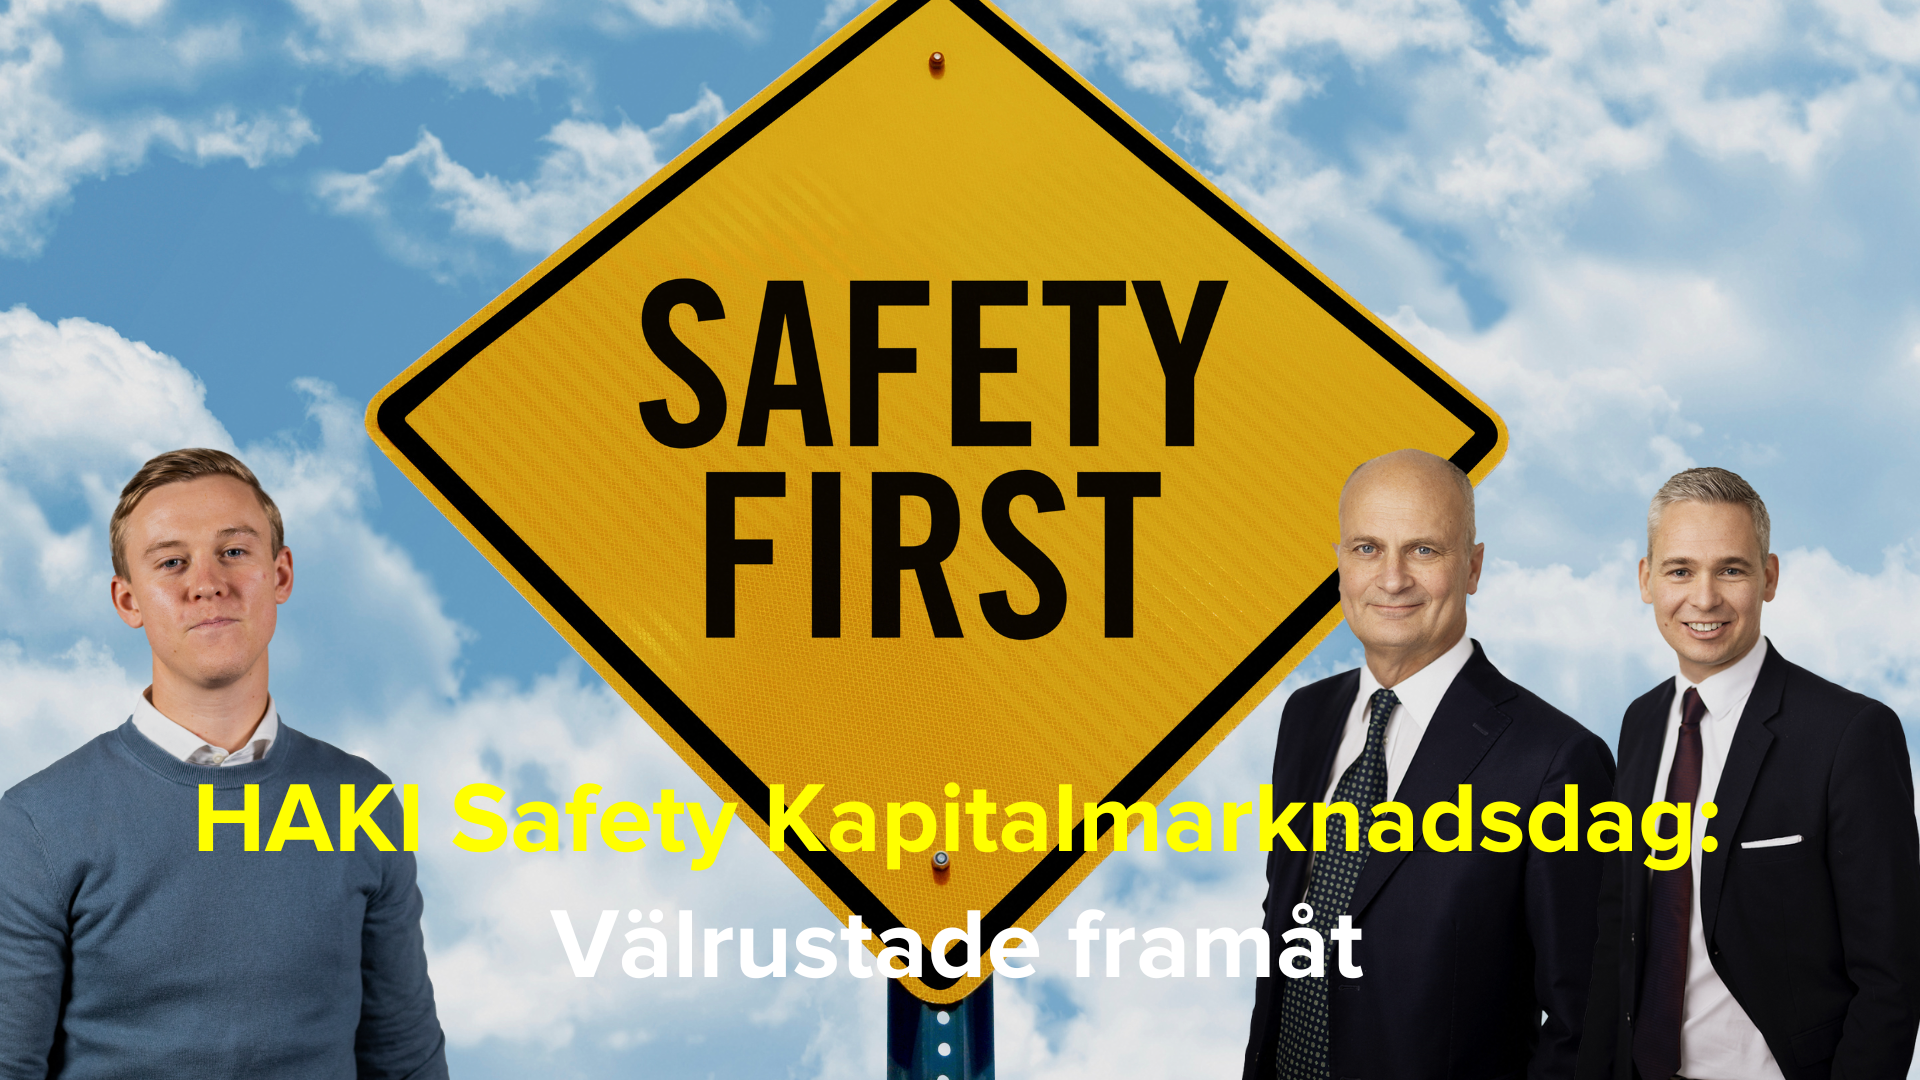 HAKI Safety Kapitalmarknadsdag: Välrustade framåt